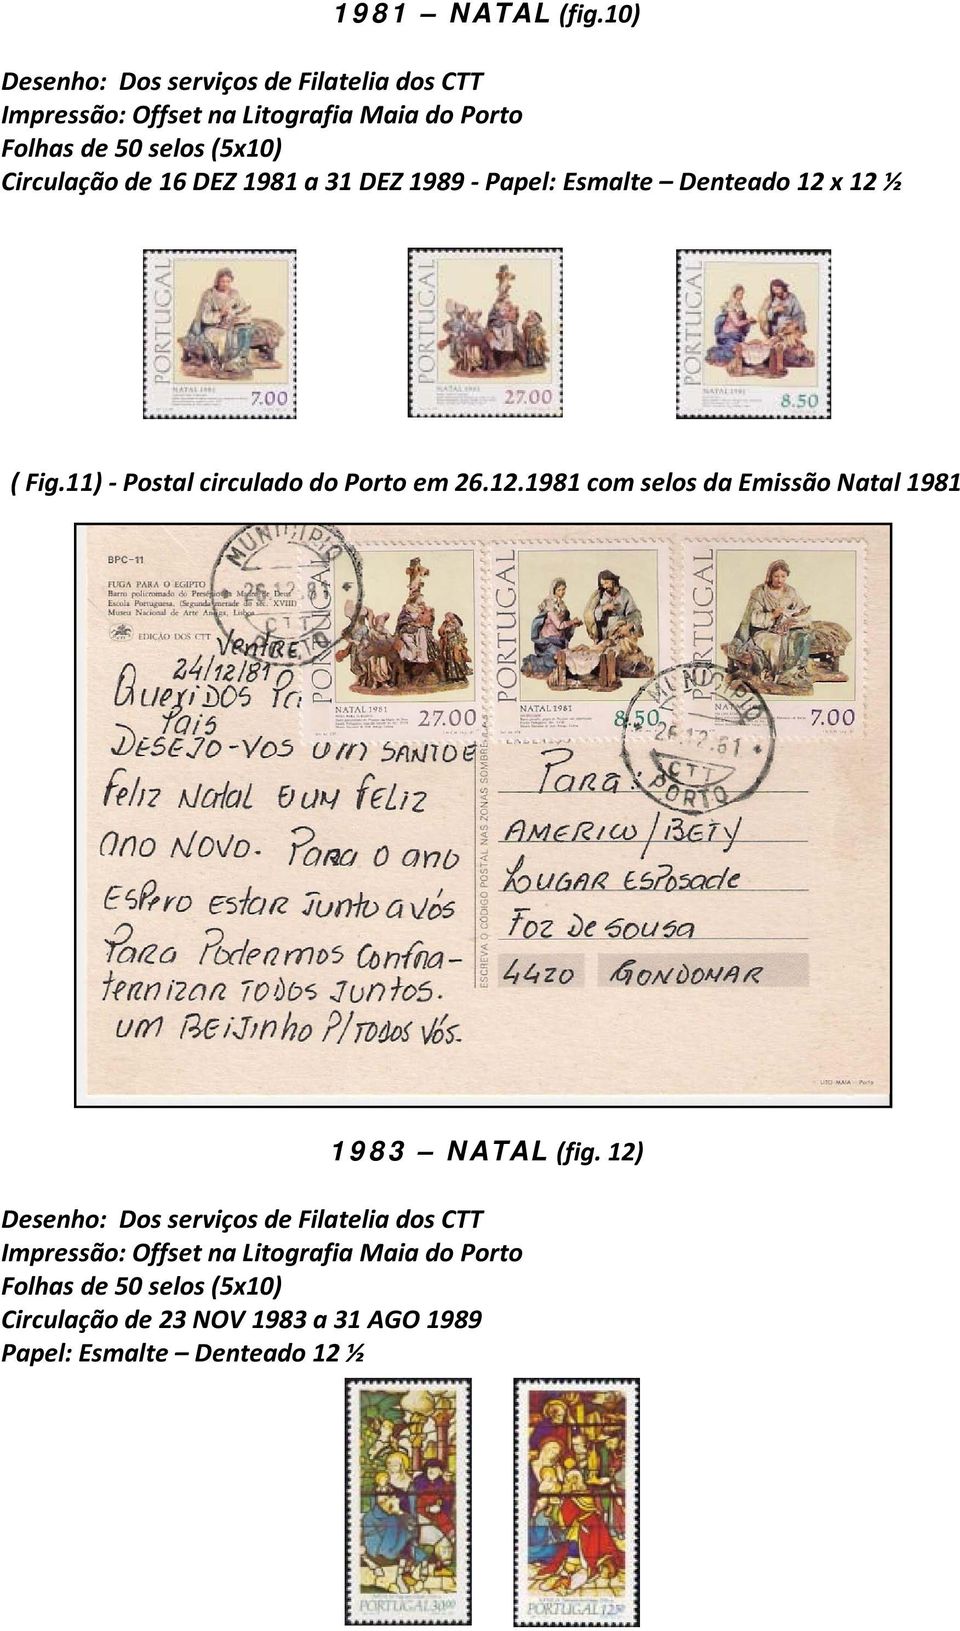 Papel: Esmalte Denteado 12 x 12 ½ ( Fig.11) - Postal circulado do Porto em 26.12.1981 com selos da Emissão Natal 1981 1983 NATAL (fig.